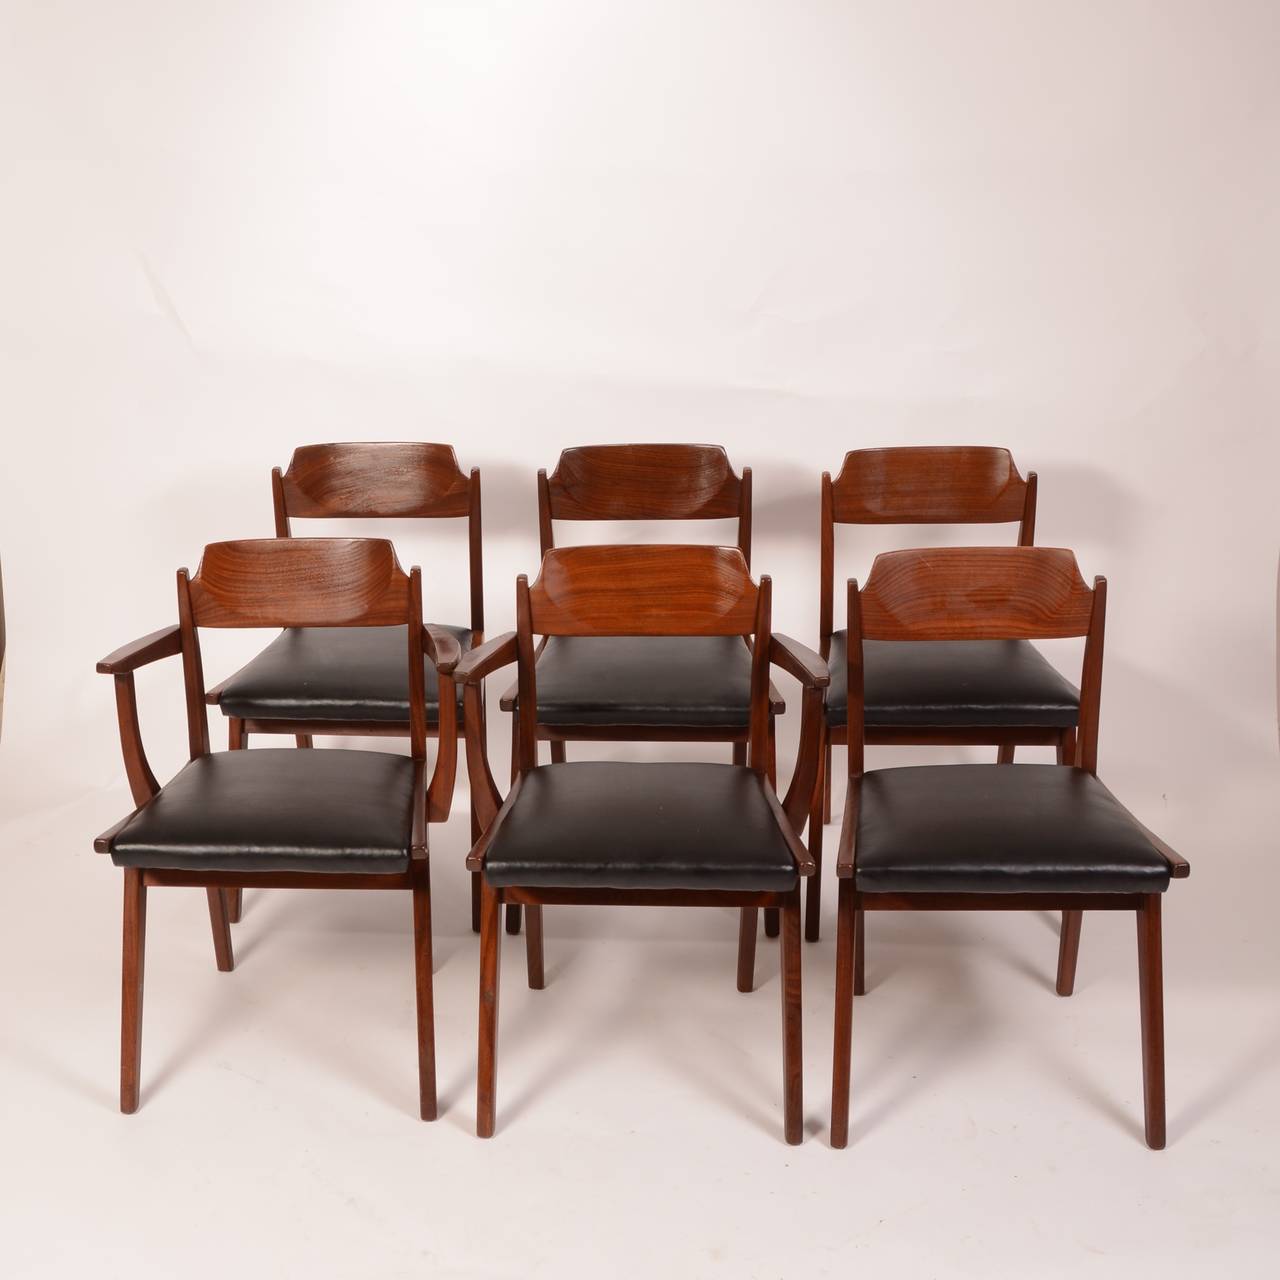 Ein Satz von 5 Esszimmerstühlen, entworfen von Jan Kuypers für Imperial. Das Set enthält einen Kapitänsstuhl (es sind 2 abgebildet).
 
 